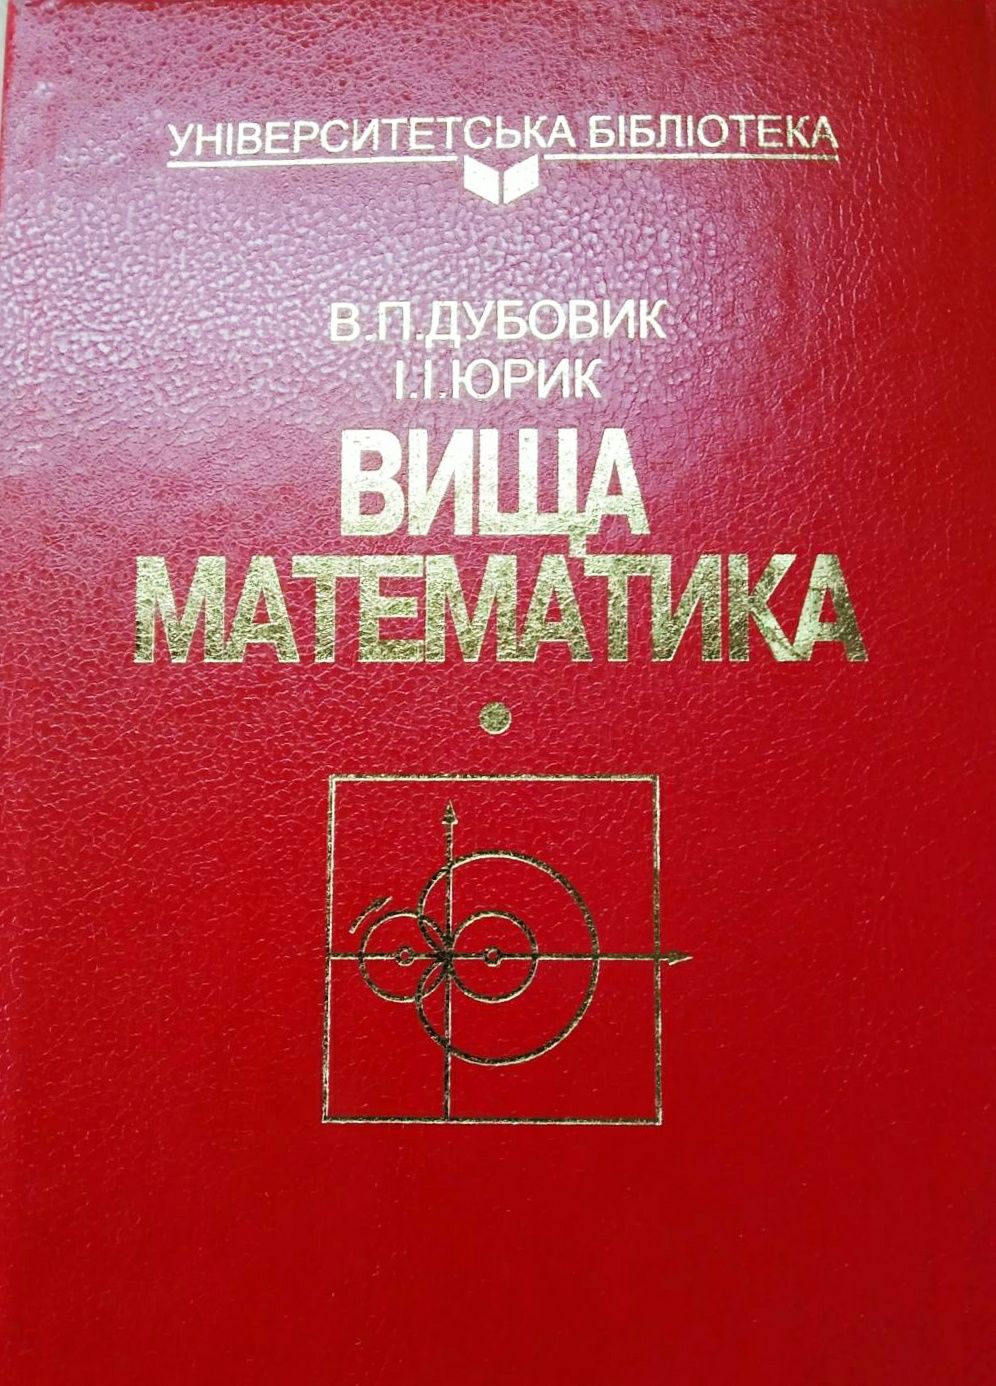 Вища математика В.П.Дубовик, І.І.Юрік нова